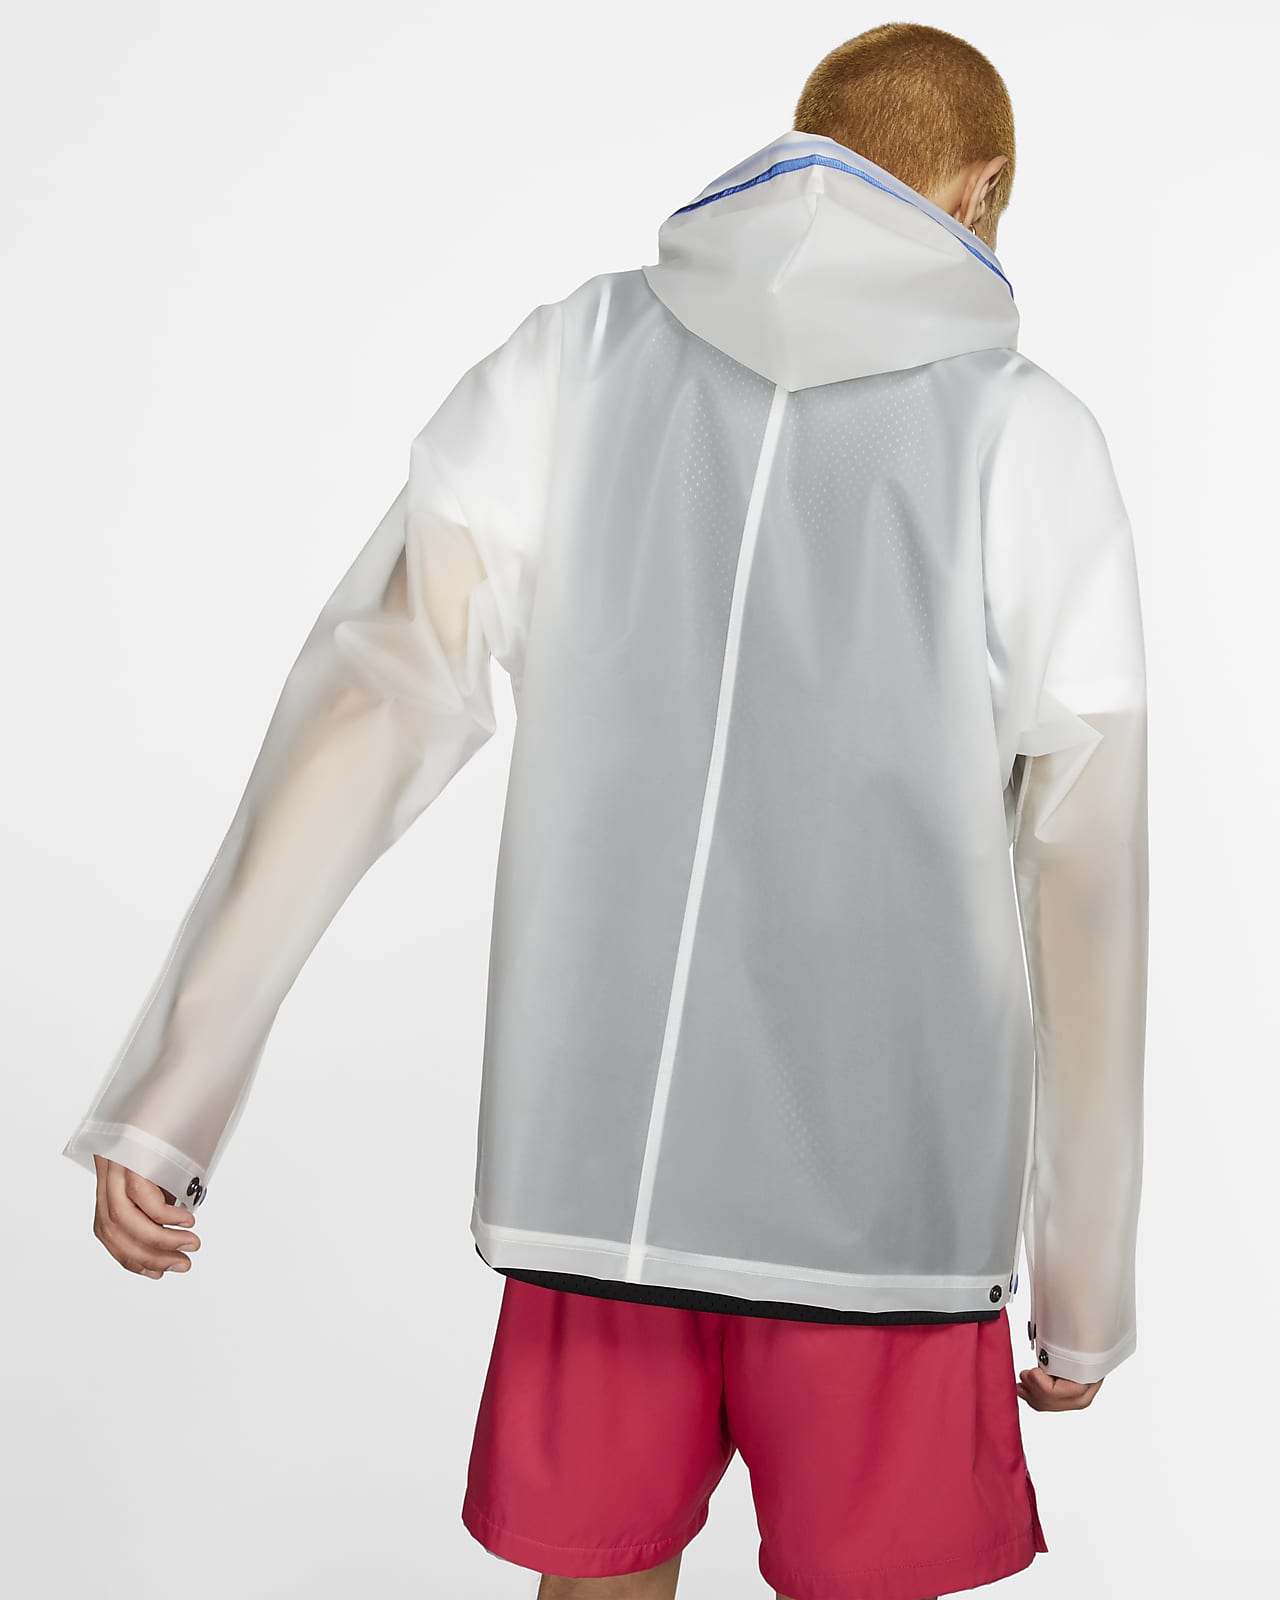 Nike Translucent Rain Jacket. Nike LU